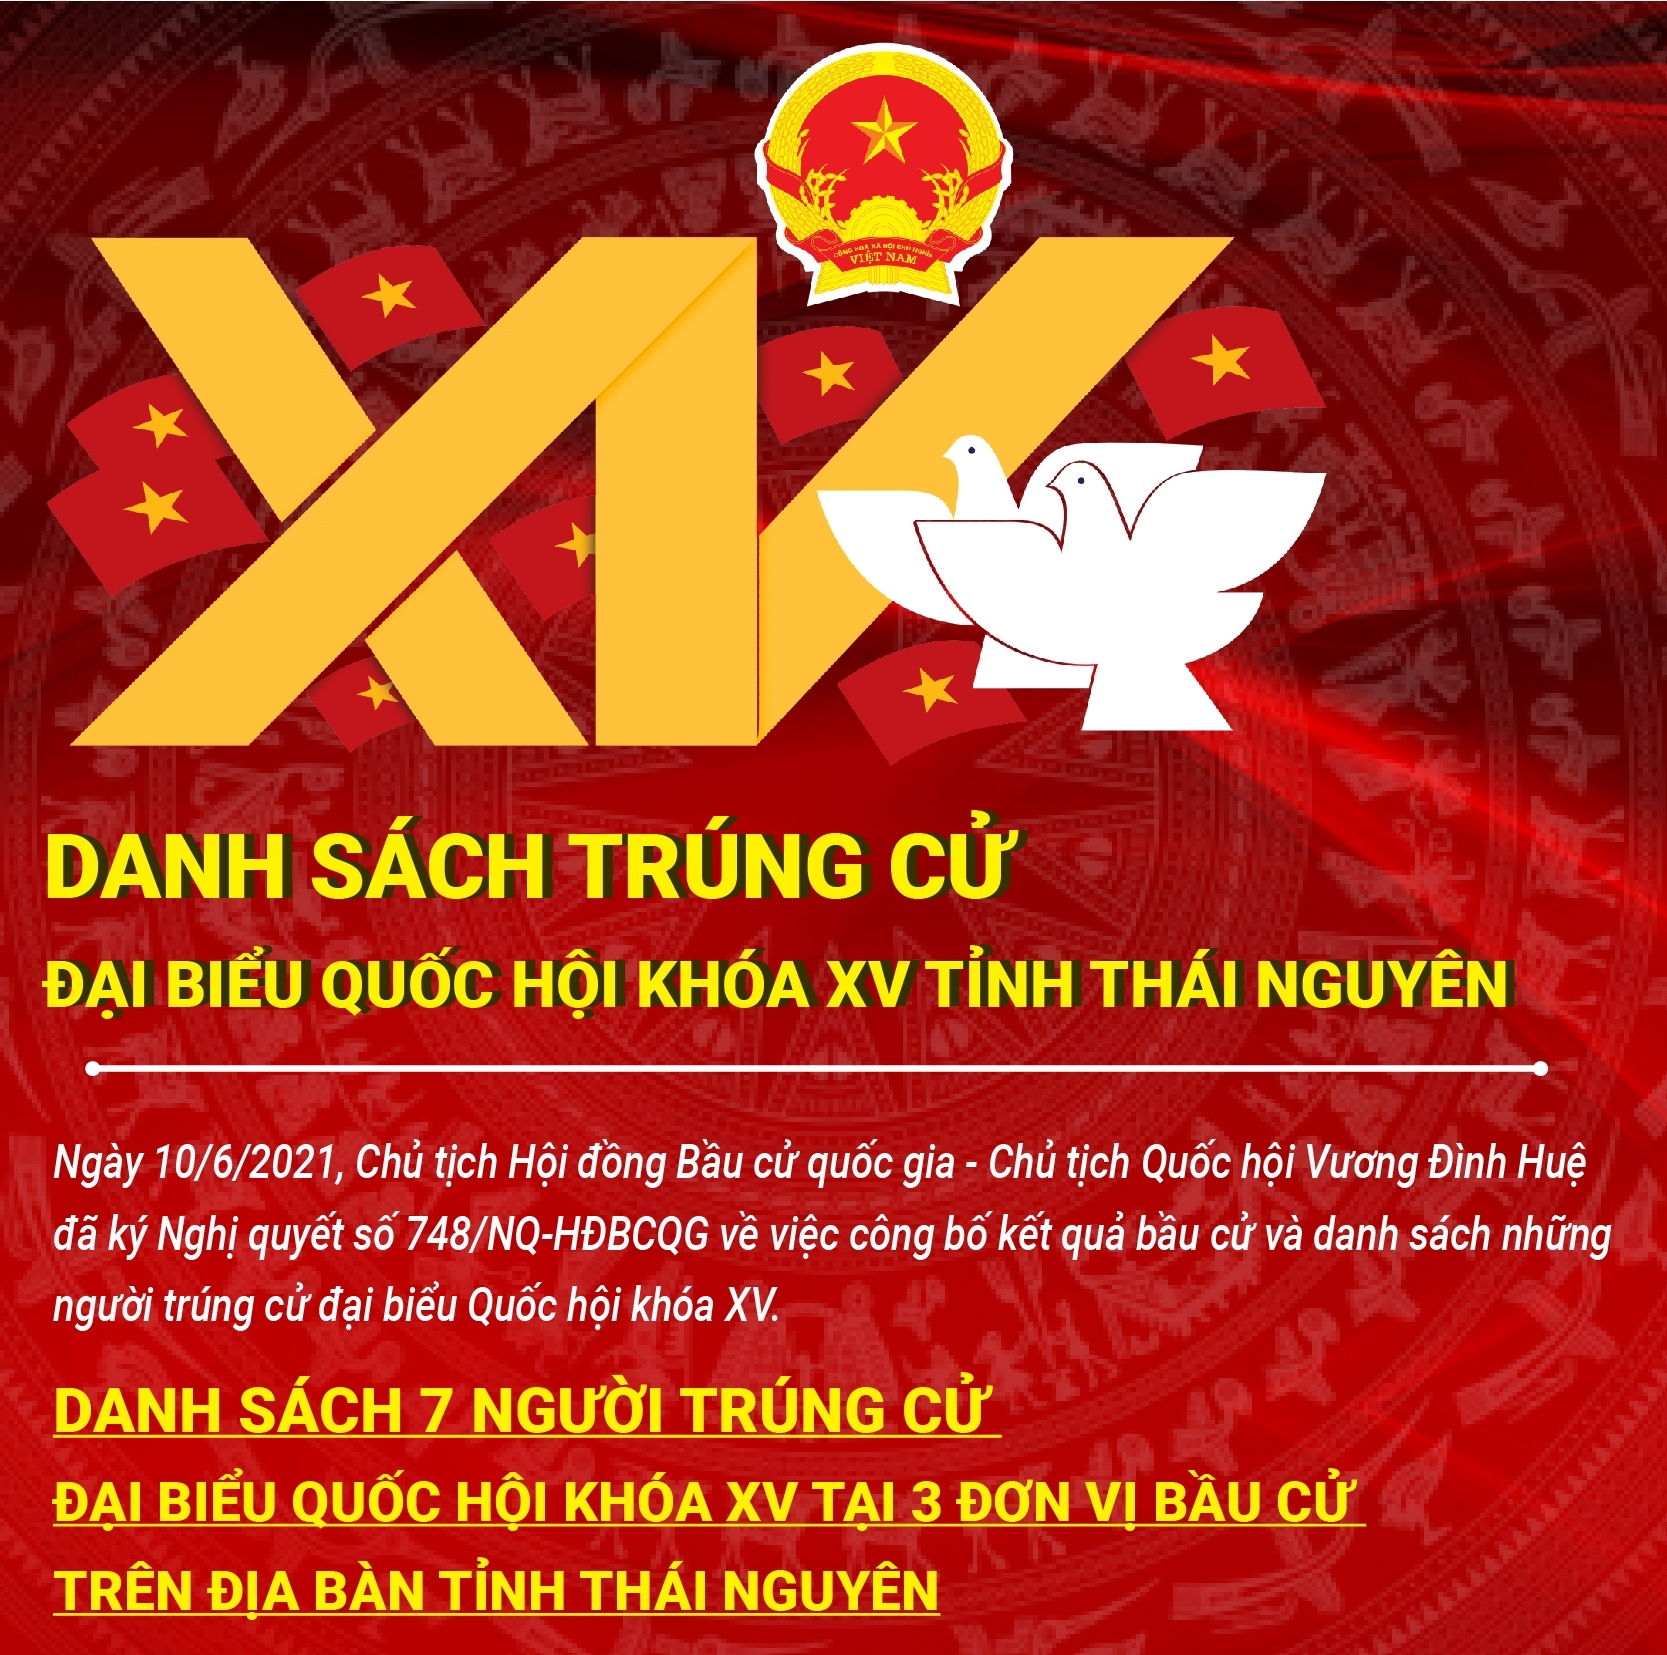 [Infographics]: Danh sách trúng cử đại biểu Quốc hội Khóa XV tỉnh Thái Nguyên